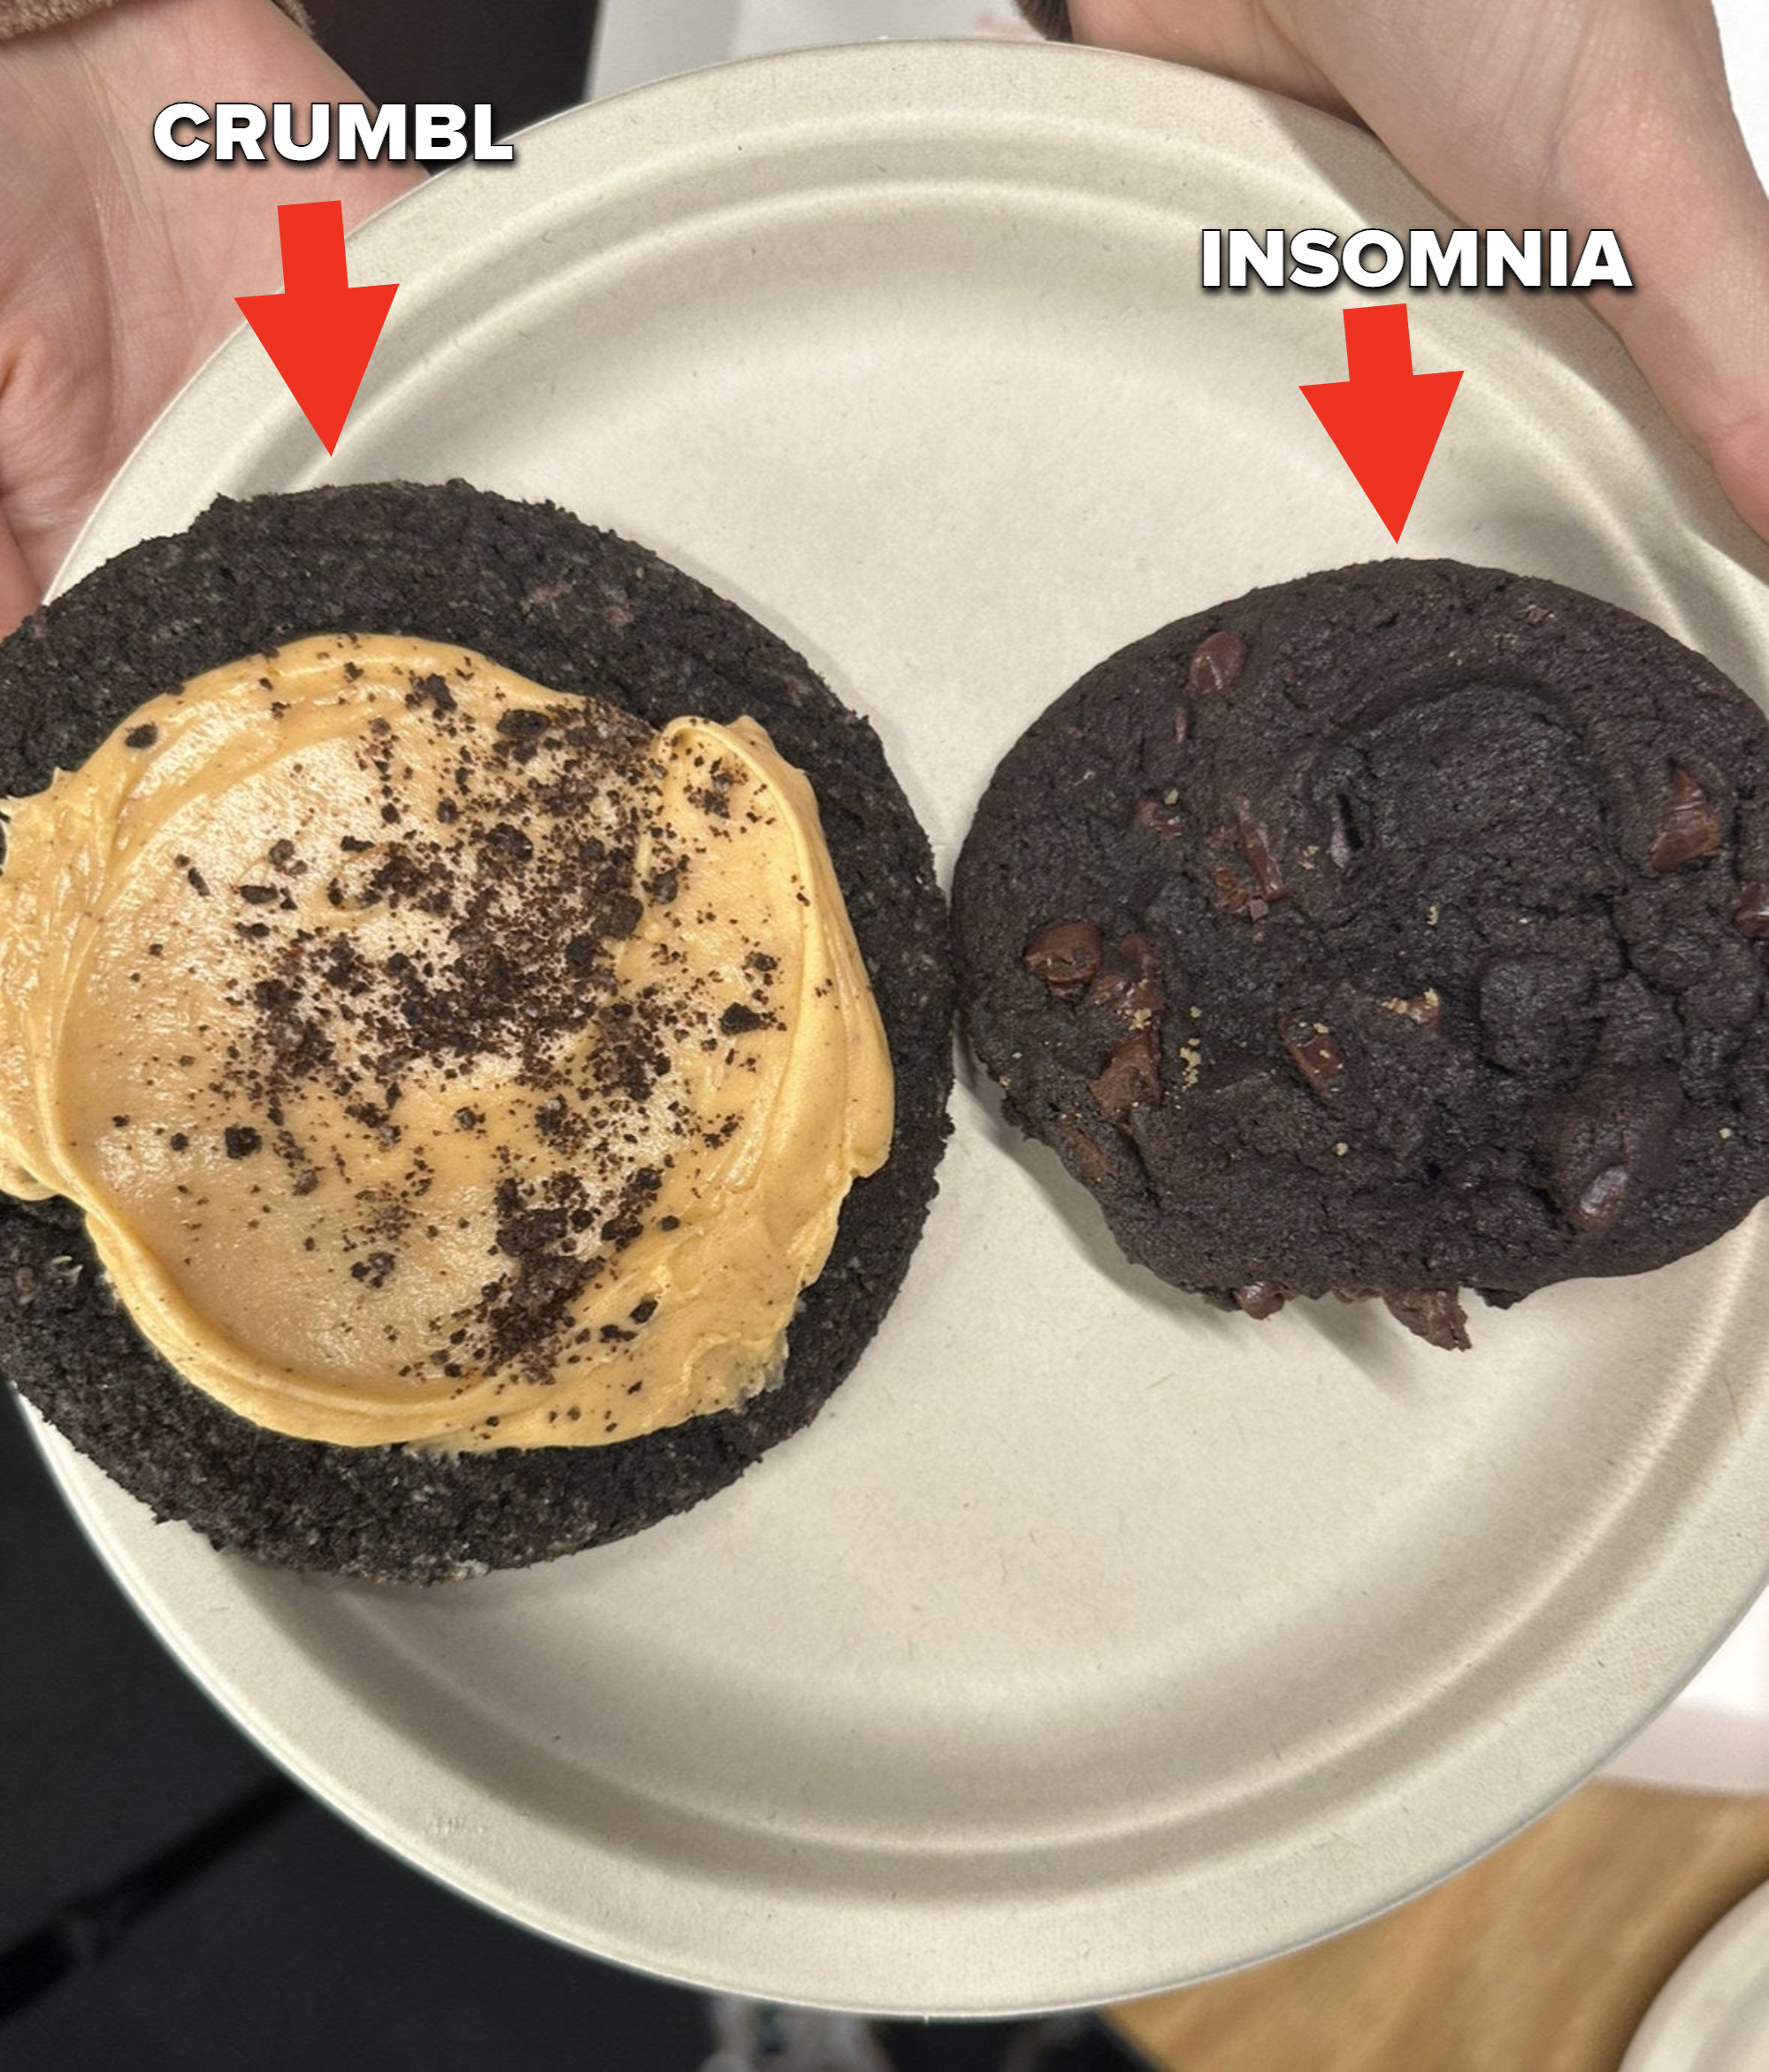 Crumbl vs. Insomnia cookies